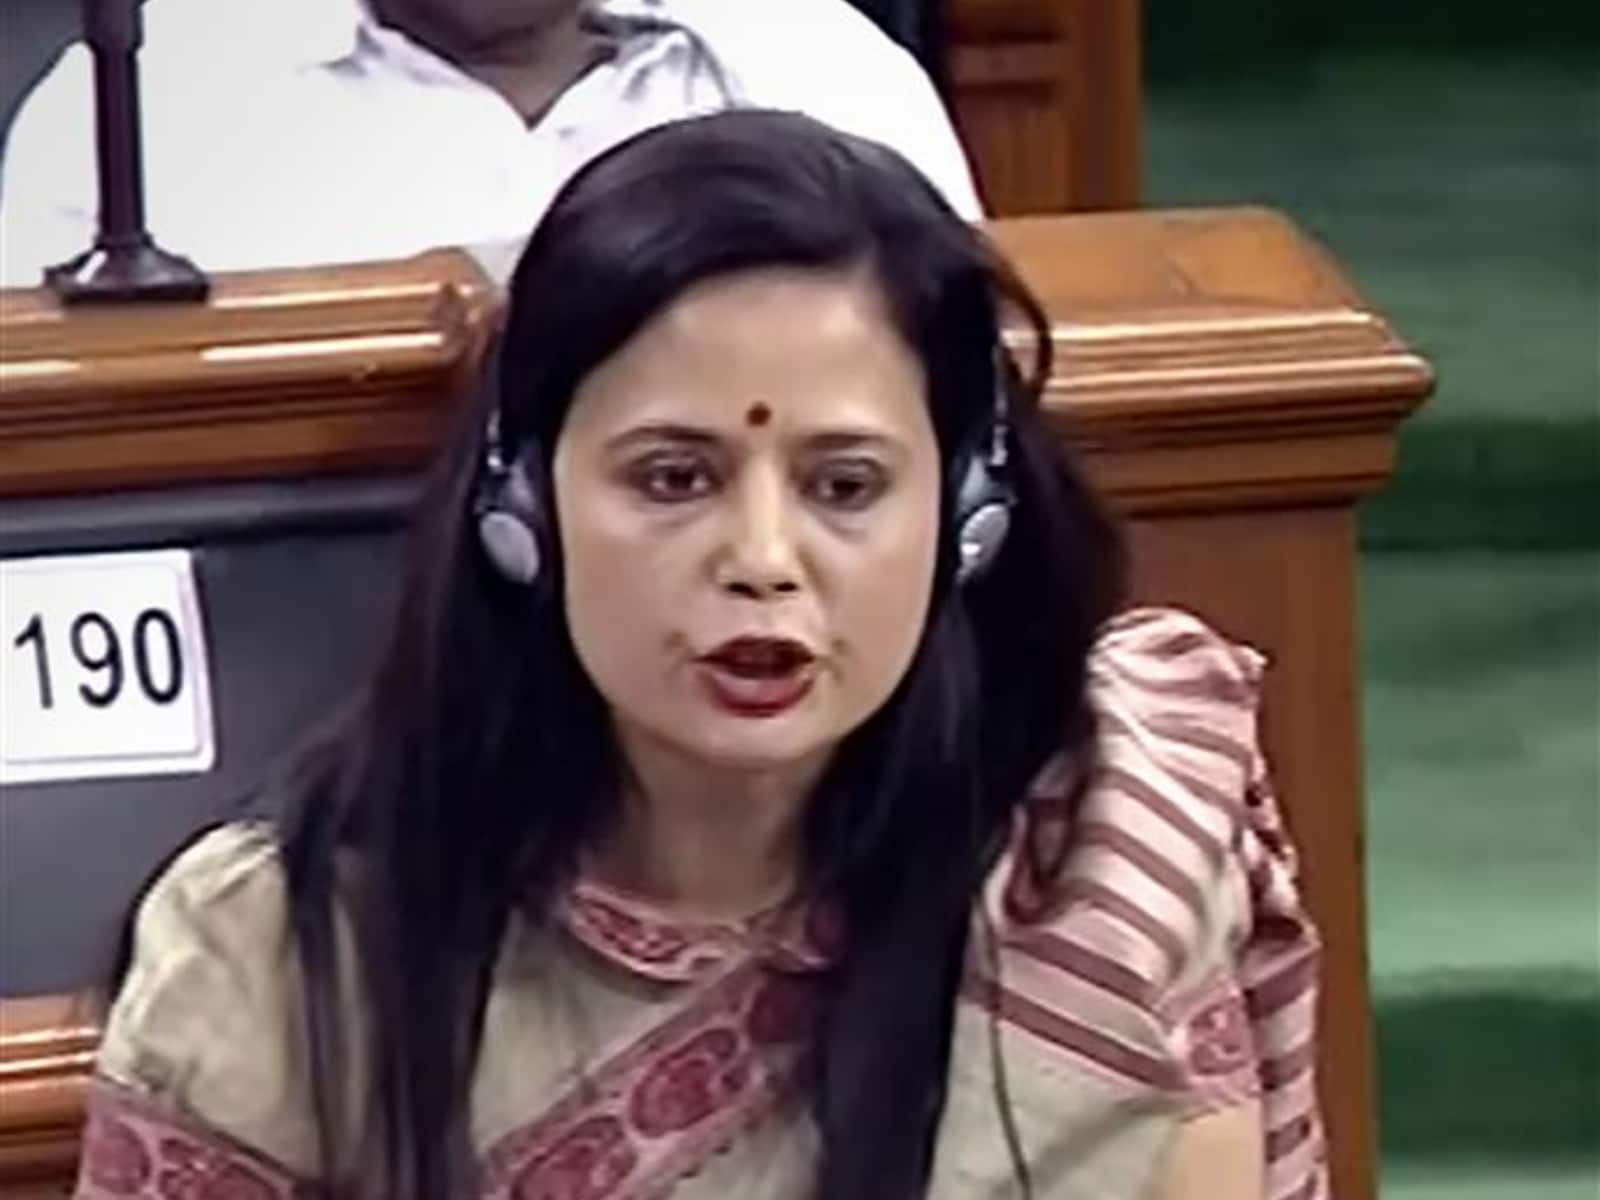 TMC MP Mahua Moitra insults Hindus with her 'vanar sena' jibe